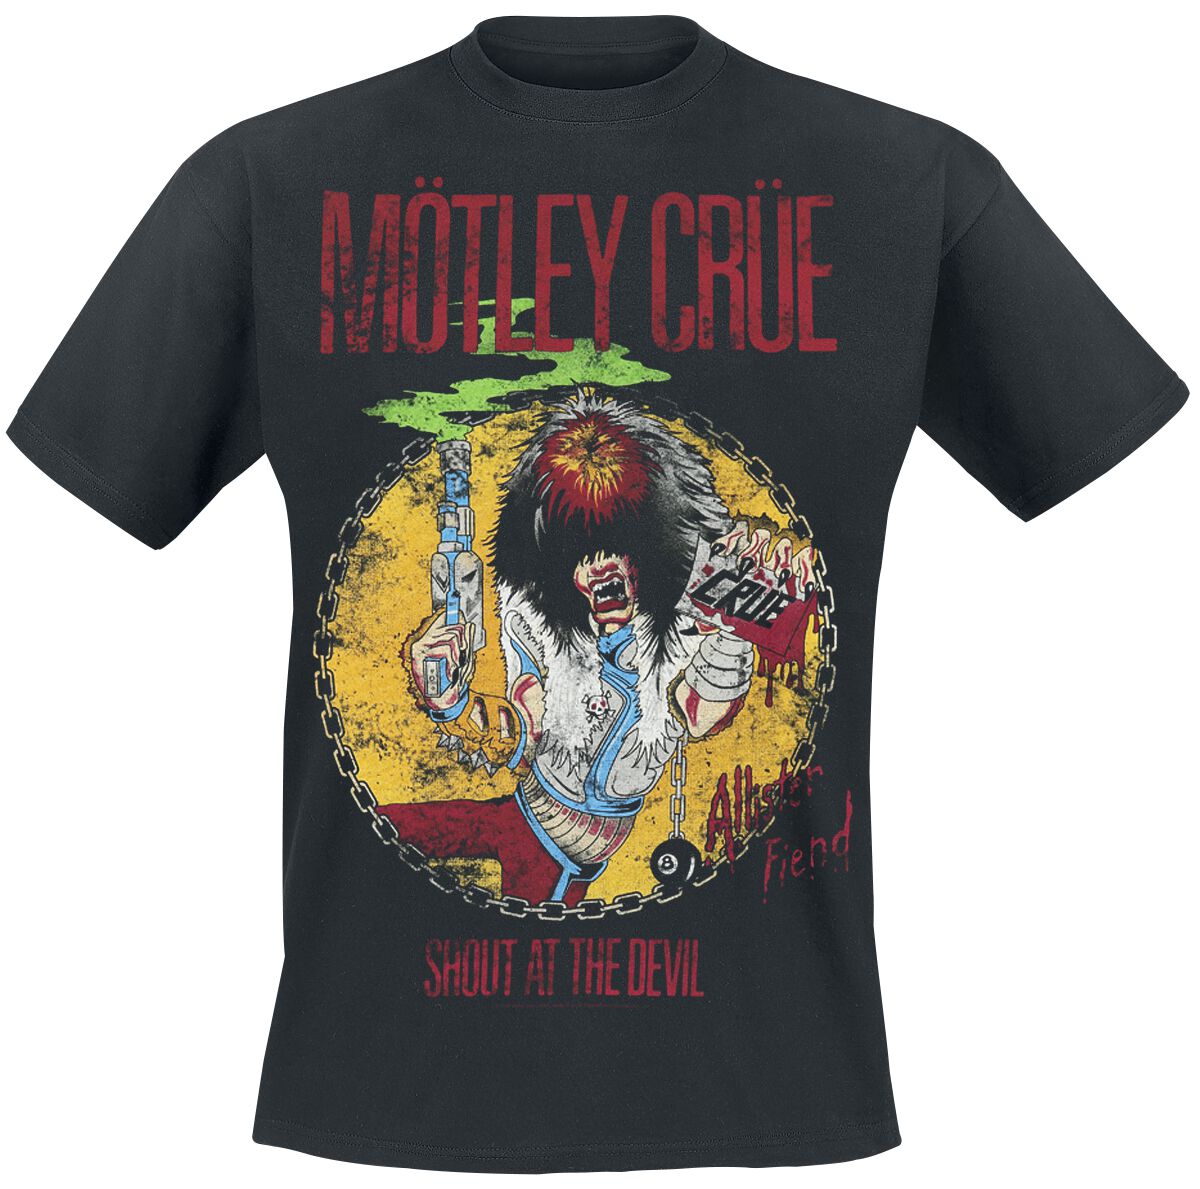 Mötley Crüe T-Shirt - Shout At The Devil - S bis XXL - für Männer - Größe XXL - schwarz  - Lizenziertes Merchandise!